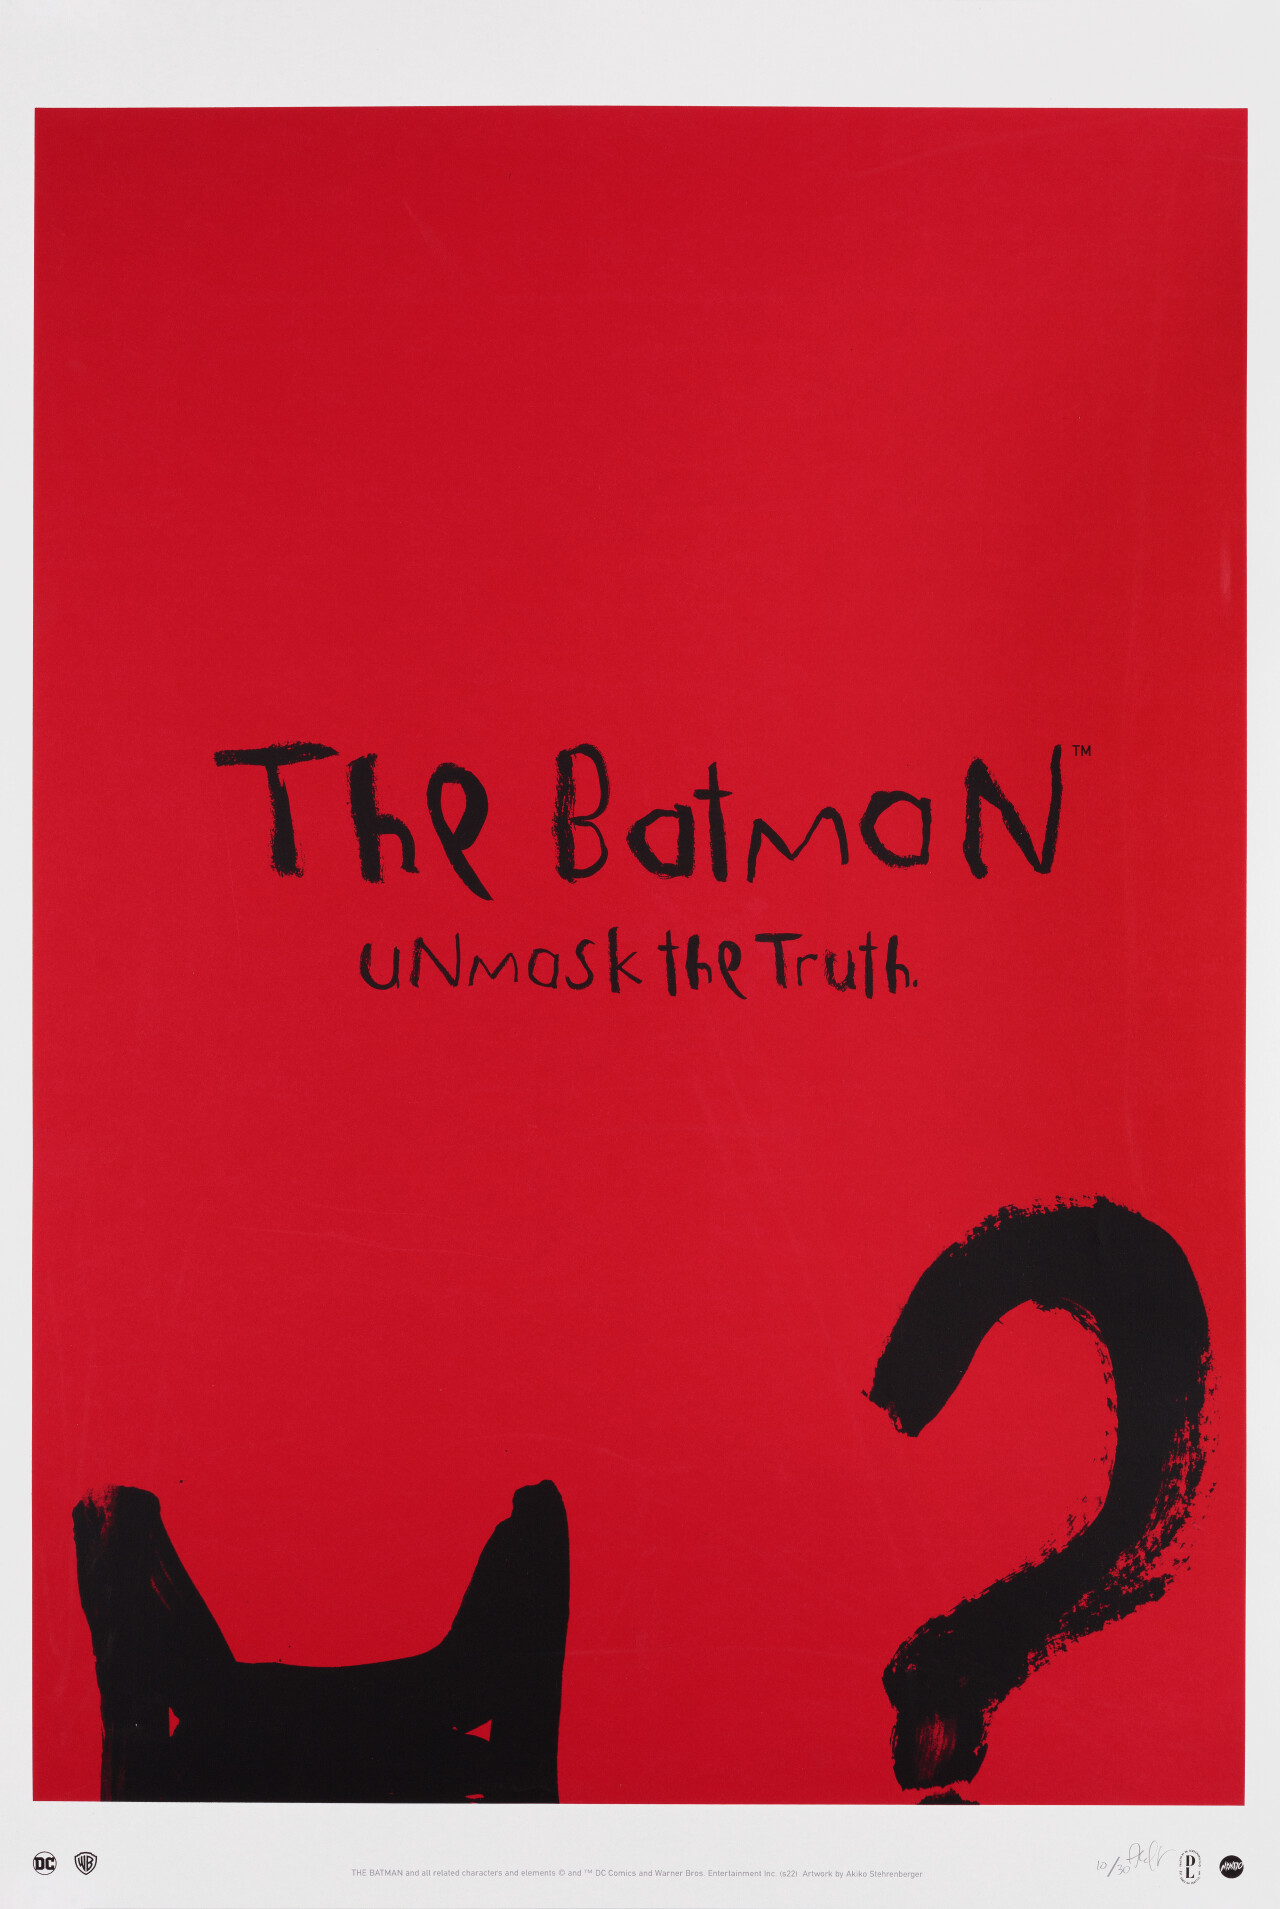 Бэтмен (The Batman, 2022), режиссёр Мэтт Ривз, минималистичный постер к фильму (США, 2022 год), автор Акико Стеренбергер